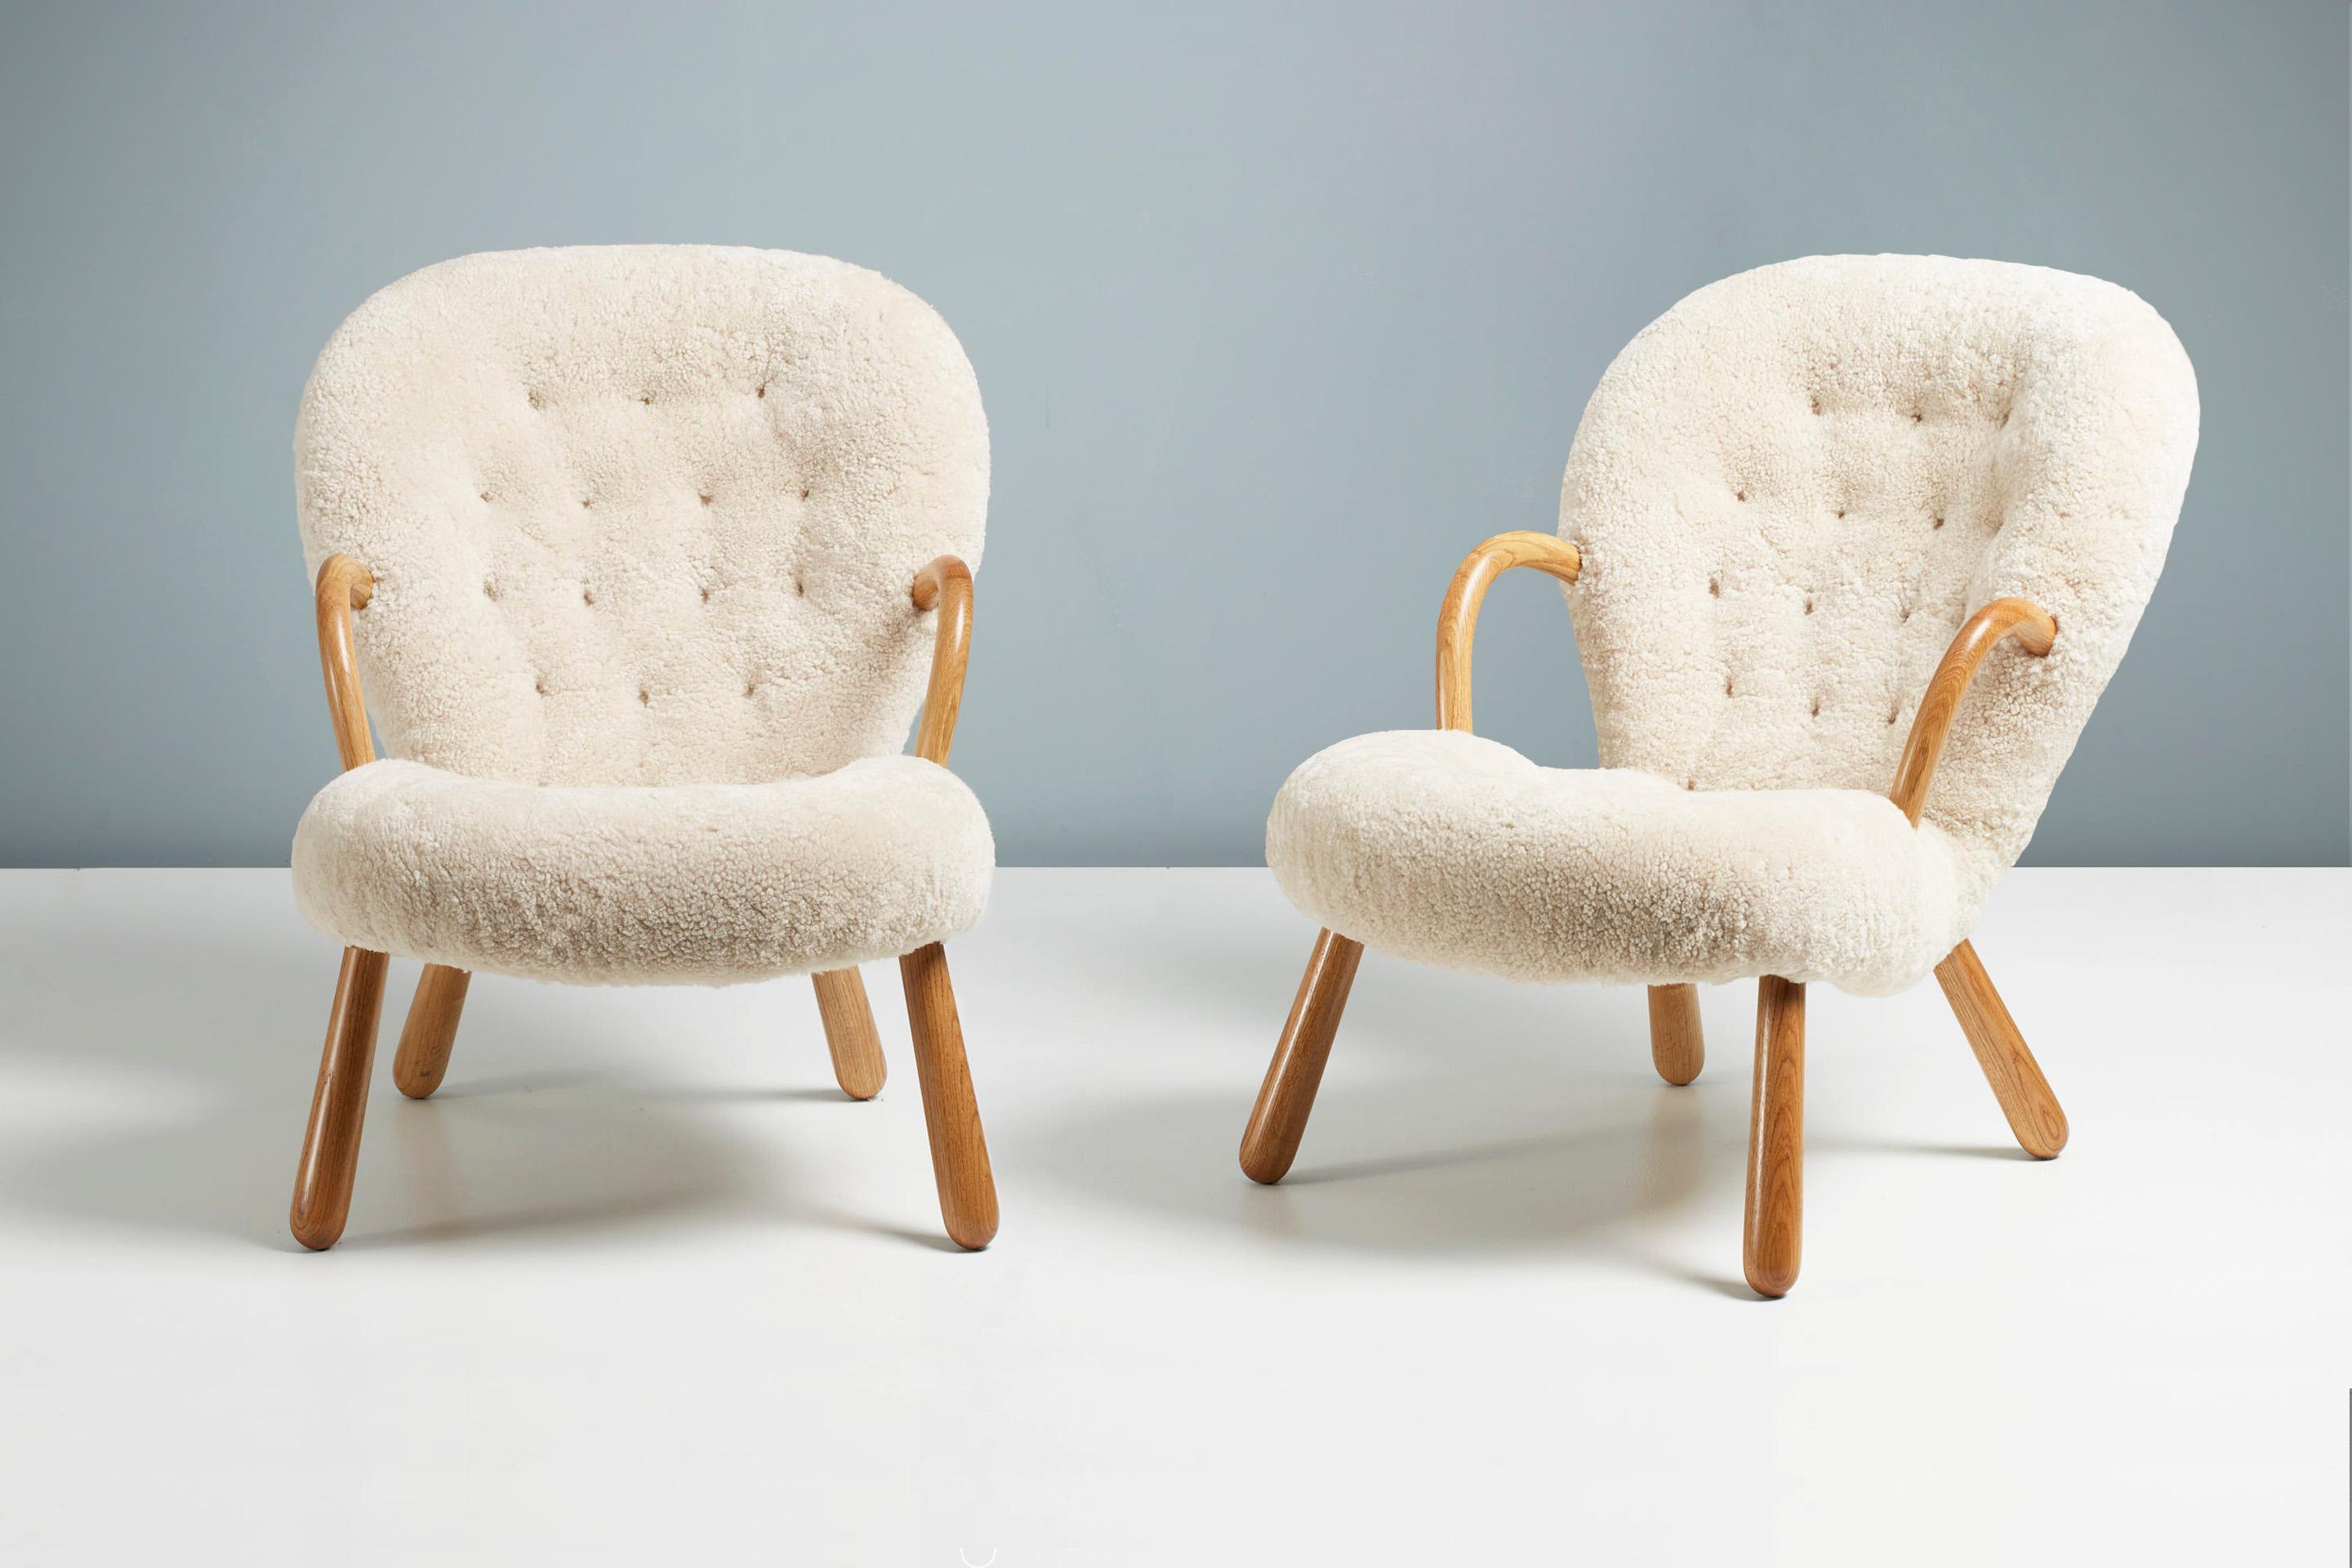 Offizielle Re-Edition des kultigen Clam Chair von Arnold Madsen.

Dagmar ist stolz darauf, in Zusammenarbeit mit dem Nachlass von Arnold Madsen den Clam Chair - eines der beliebtesten und begehrtesten skandinavischen Möbeldesigns des 20.